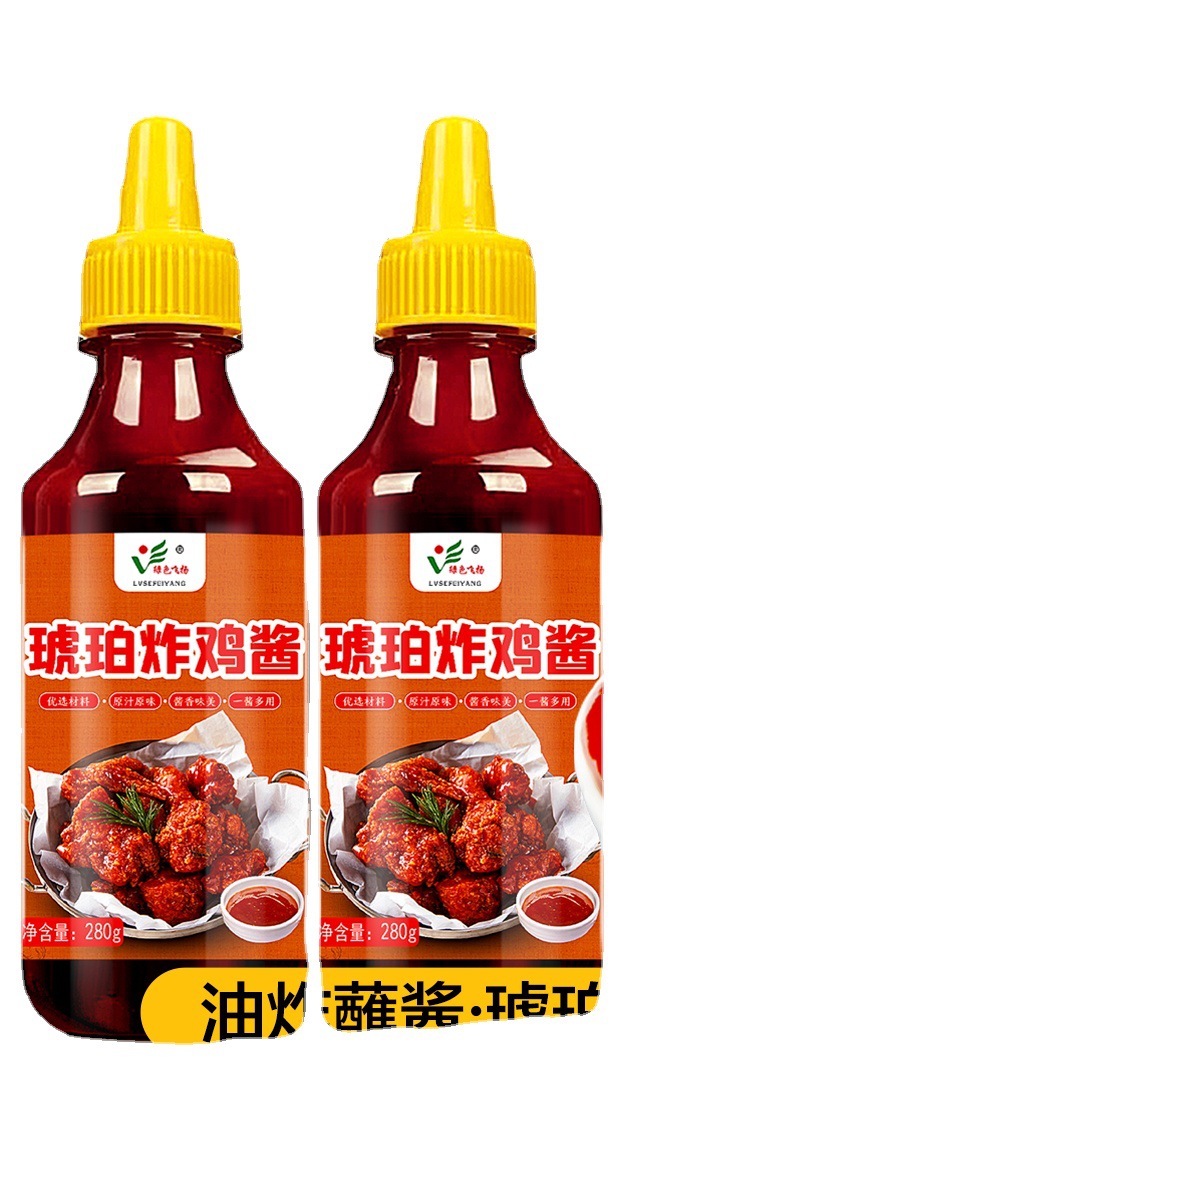 韩式炸鸡酱甜辣酱琥珀酱料蘸酱韩国蜂蜜芥末酱家用0脂肪商用酱汁